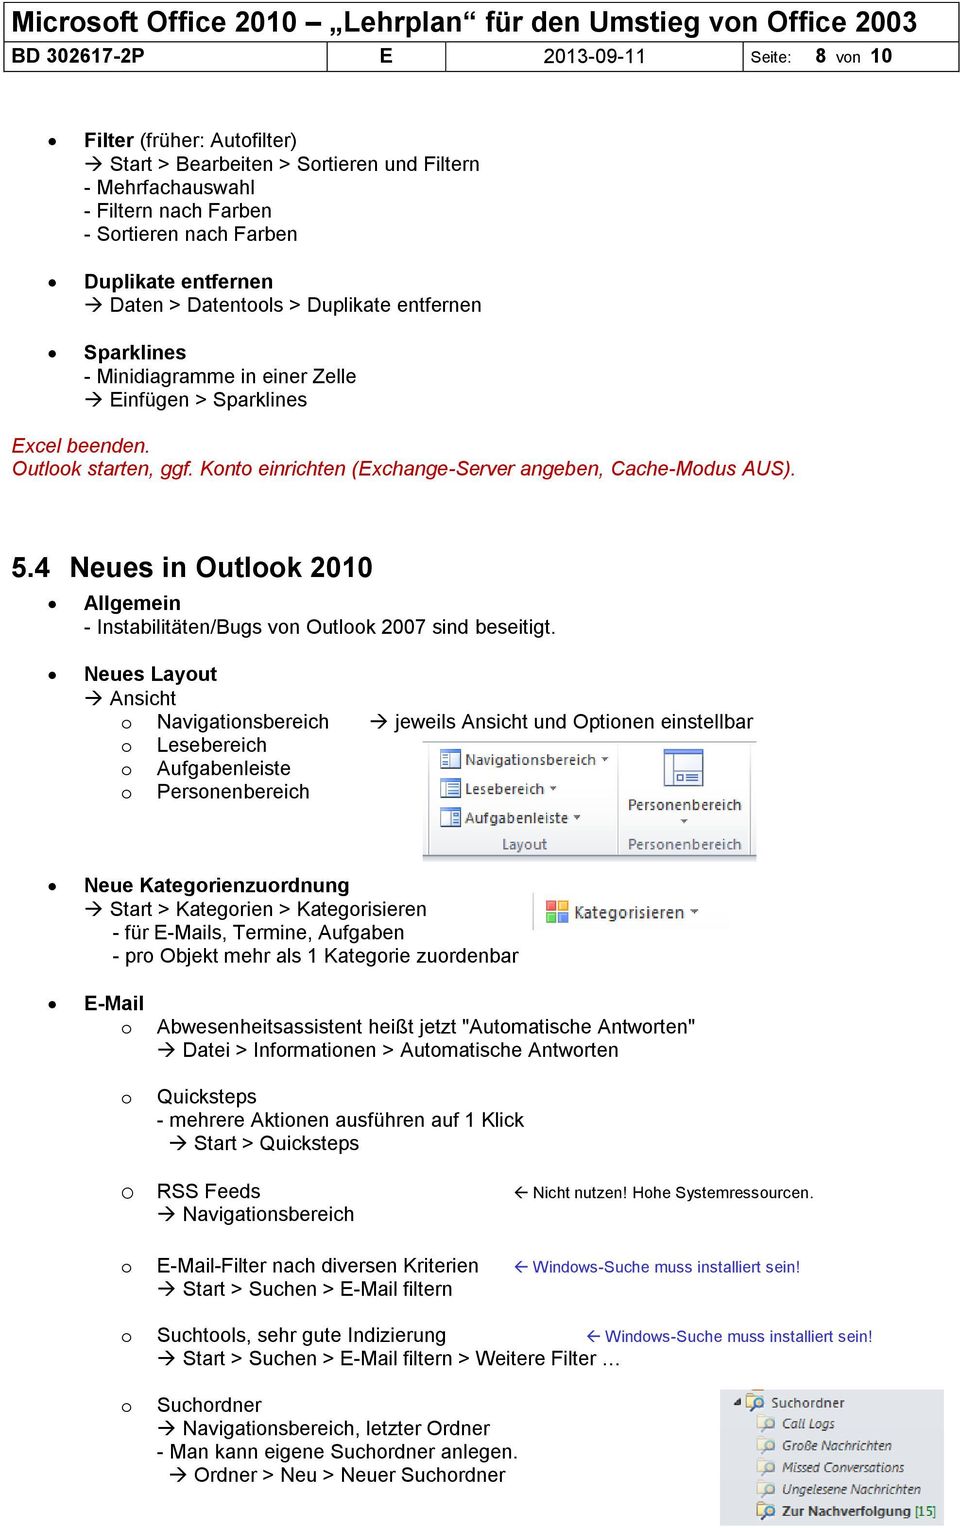 Konto einrichten (Exchange-Server angeben, Cache-Modus AUS). 5.4 Neues in Outlook 2010 Allgemein - Instabilitäten/Bugs von Outlook 2007 sind beseitigt.